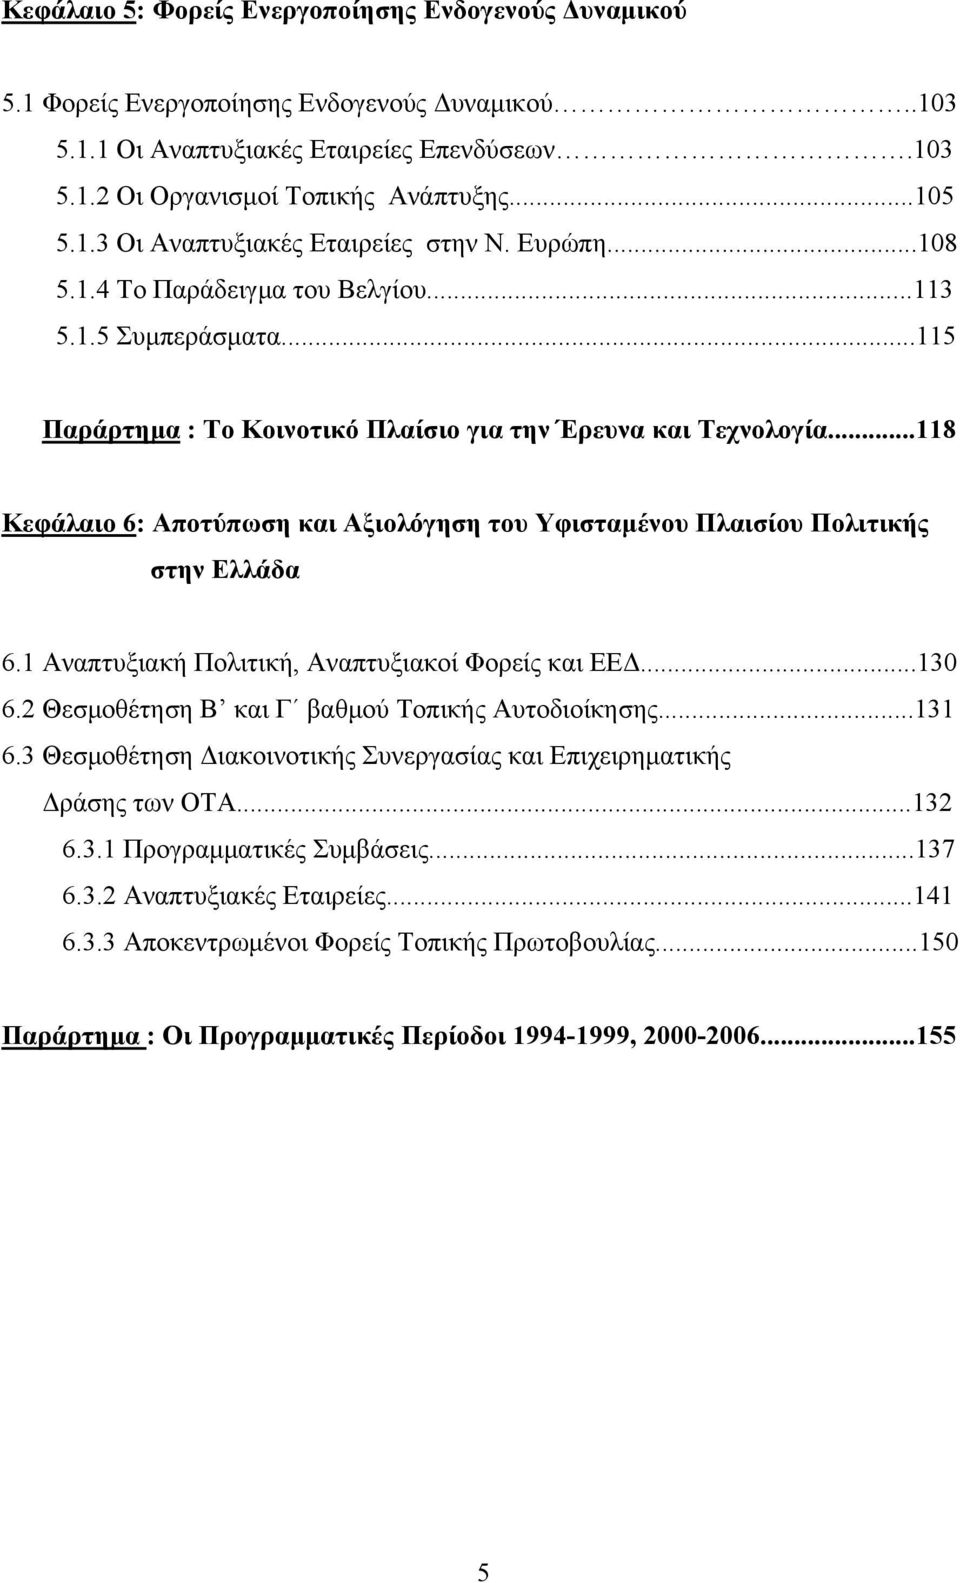 ..118 Κεφάλαιο 6: Αποτύπωση και Αξιολόγηση του Υφισταμένου Πλαισίου Πολιτικής στην Ελλάδα 6.1 Αναπτυξιακή Πολιτική, Αναπτυξιακοί Φορείς και ΕΕΔ...130 6.